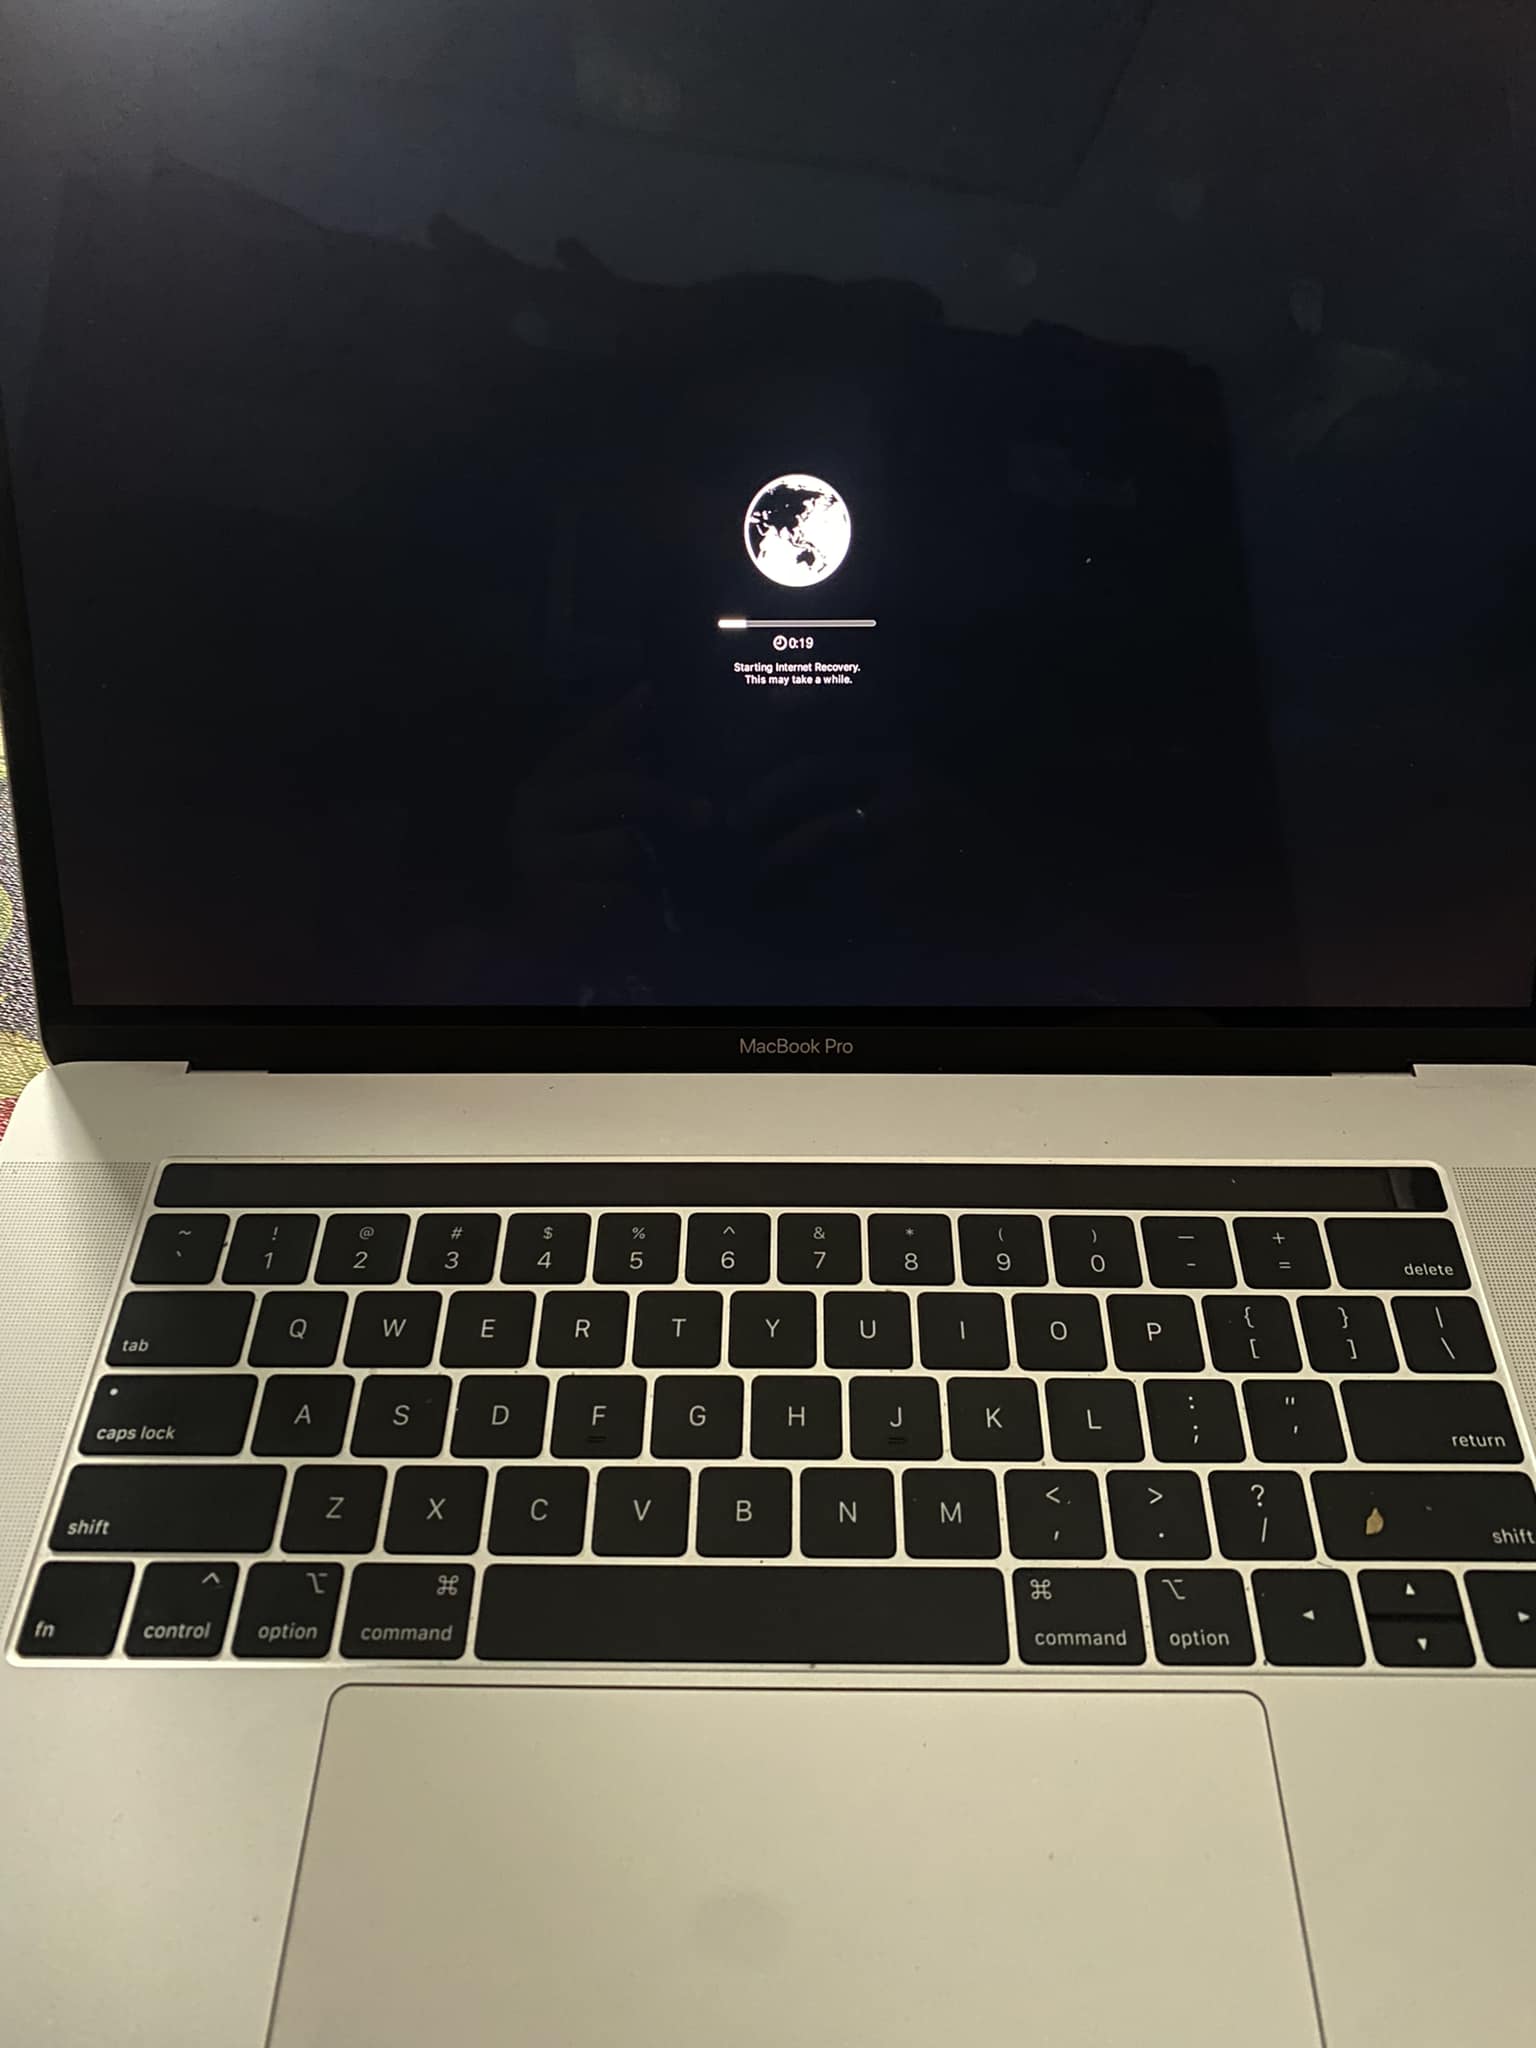 Solusi SSD OS System yang Terhapus pada Macbook Pro [SOLVED] Tahun 2018